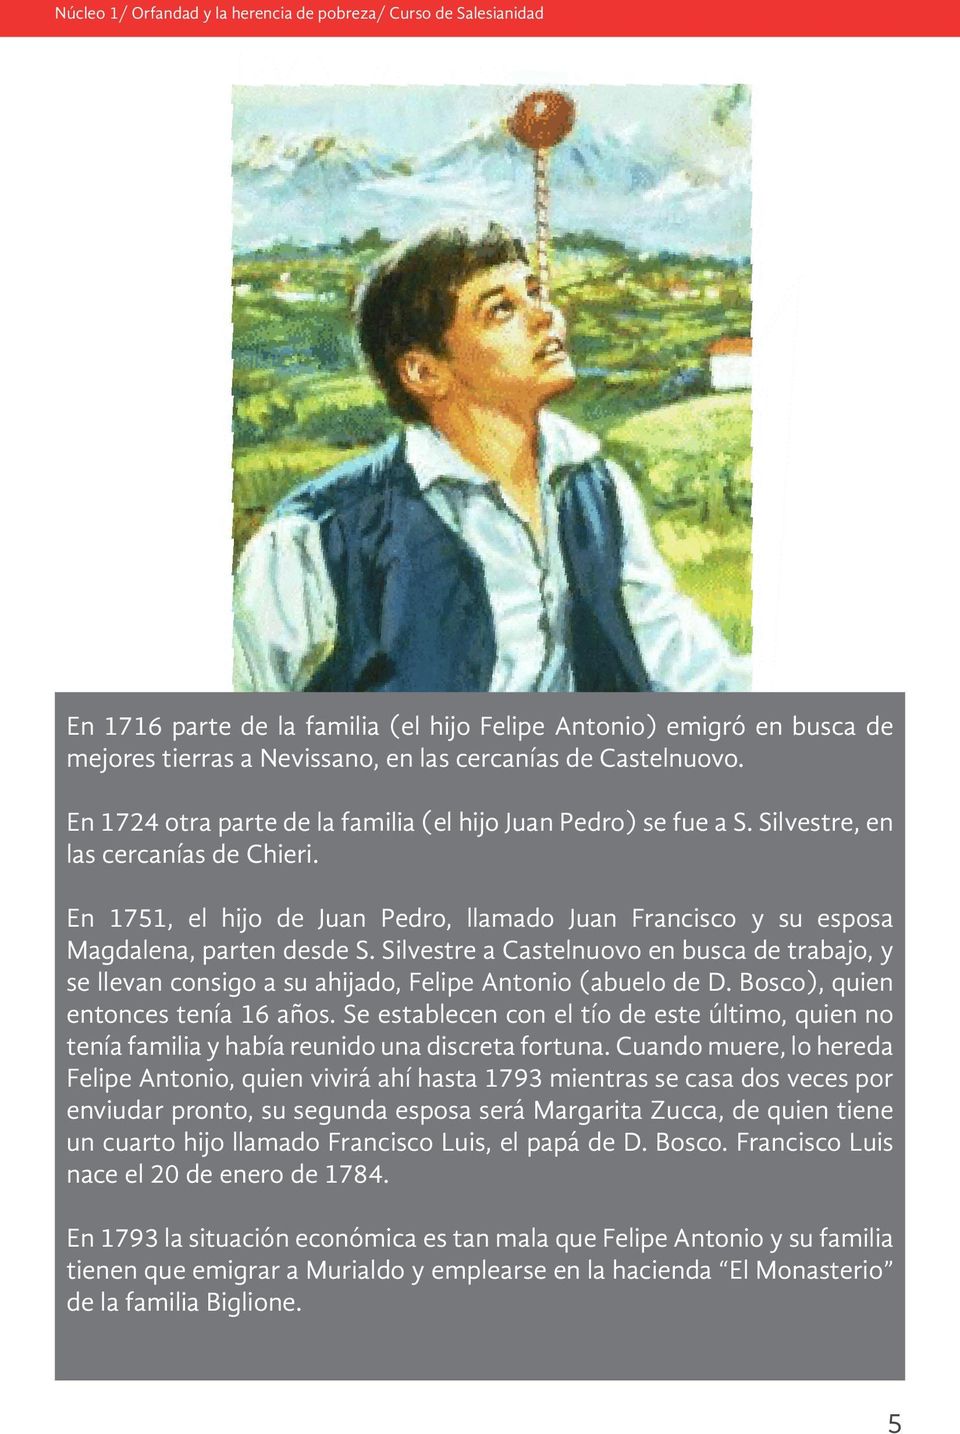 Silvestre a Castelnuovo en busca de trabajo, y se llevan consigo a su ahijado, Felipe Antonio (abuelo de D. Bosco), quien entonces tenía 16 años.